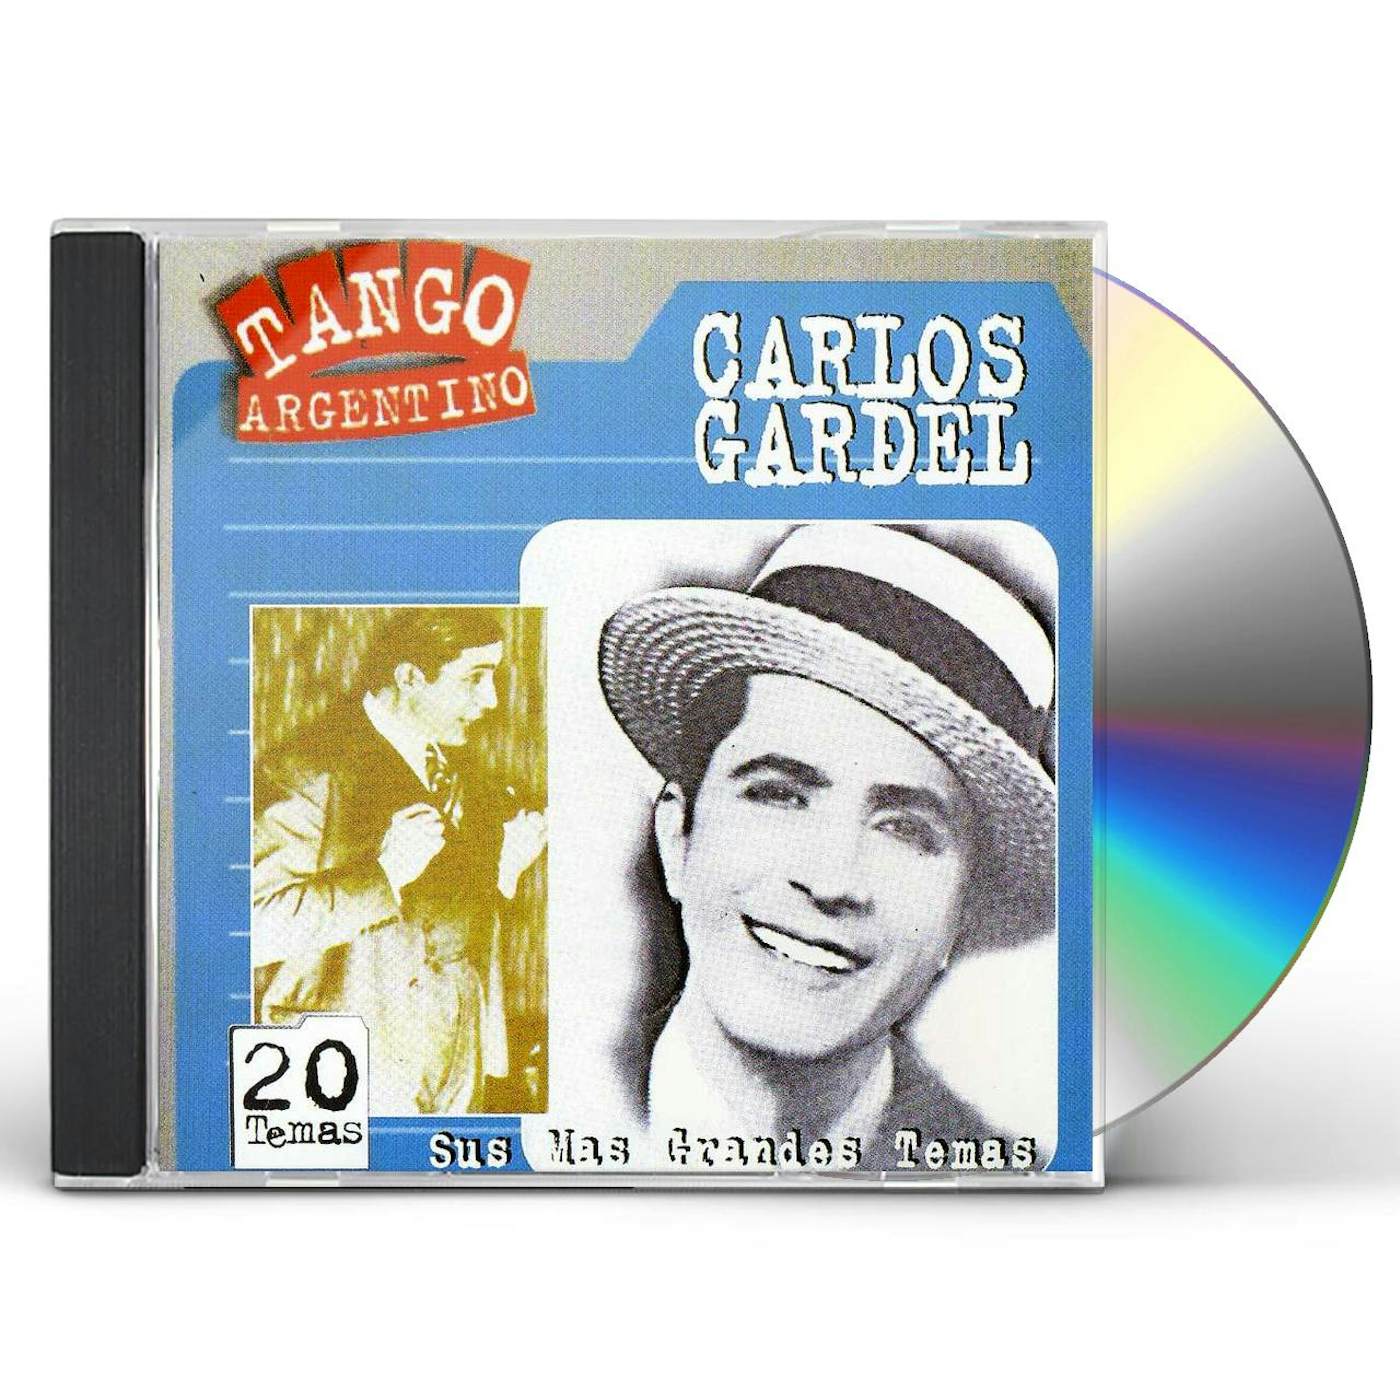 Carlos Gardel SUS MAS GRANDES TEMAS CD